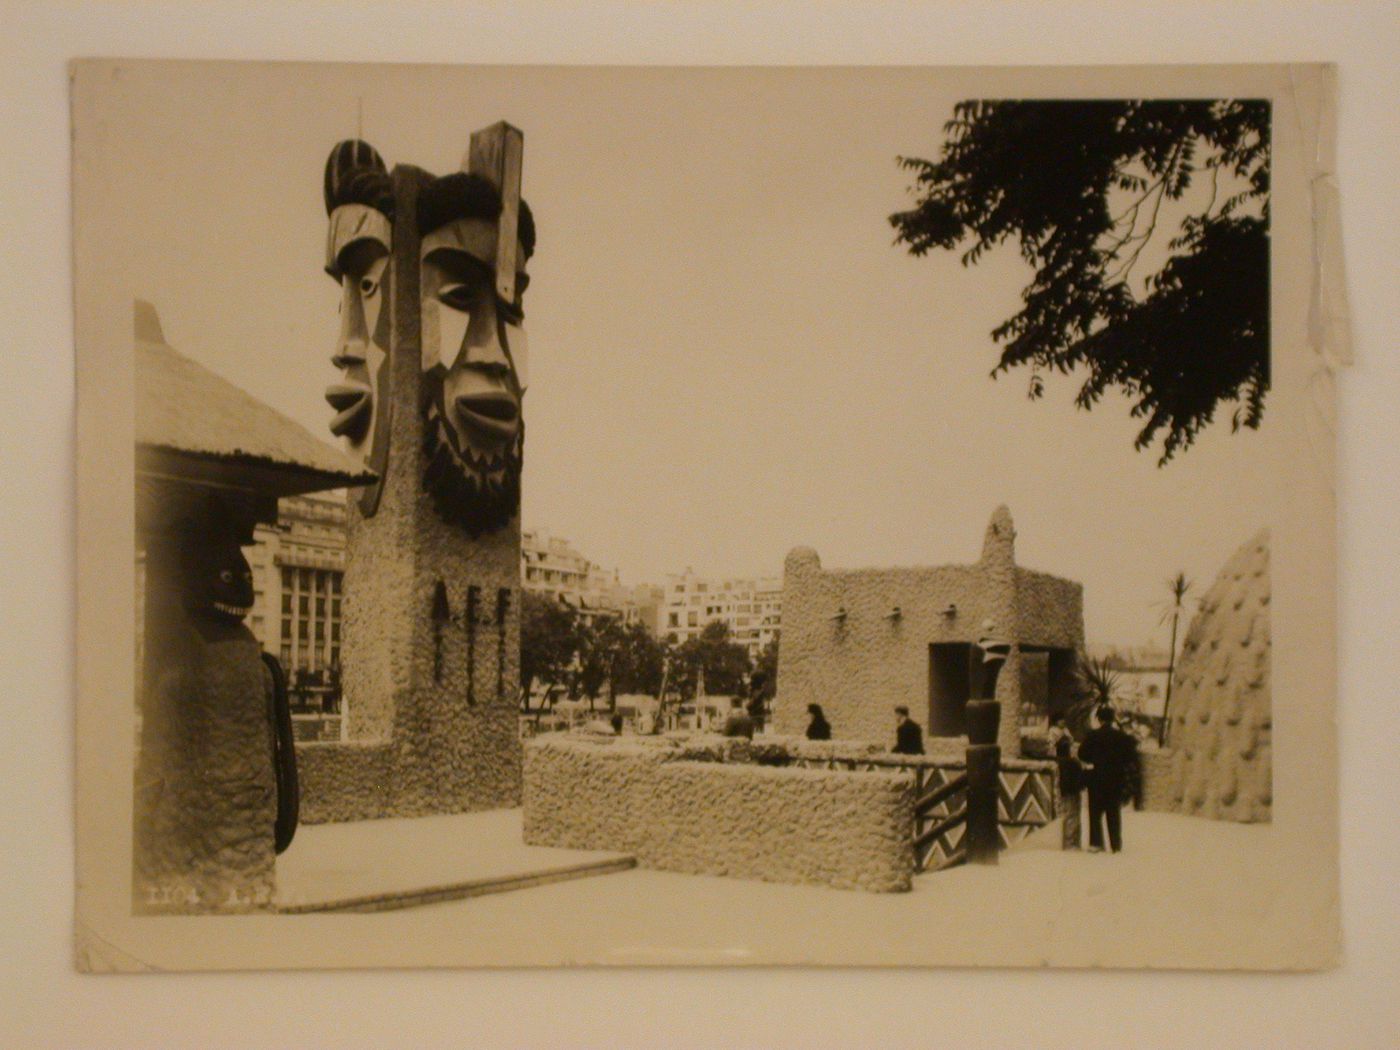 View of the A.E.F.'s pavilion, 1937 Exposition internationale, Paris, France